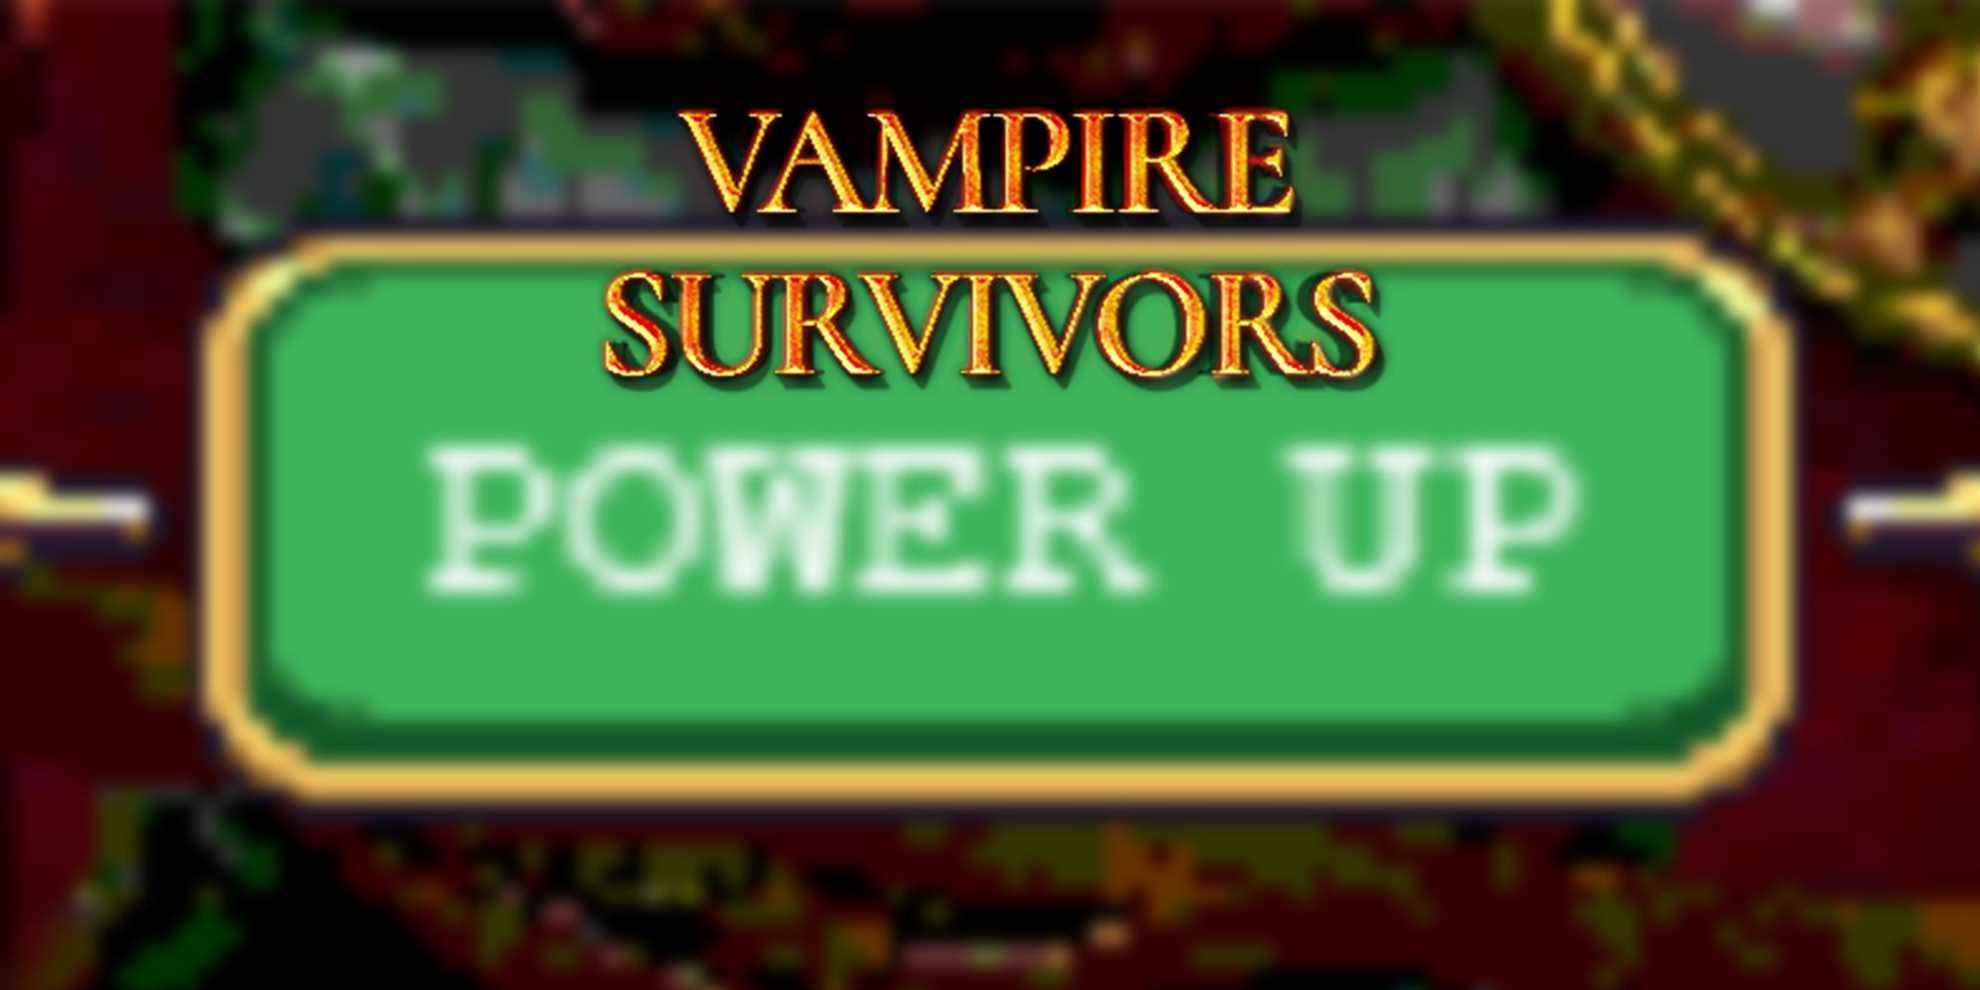 Vampire Survivors - Logo du jeu superposé sur l'image agrandie du bouton PowerUp